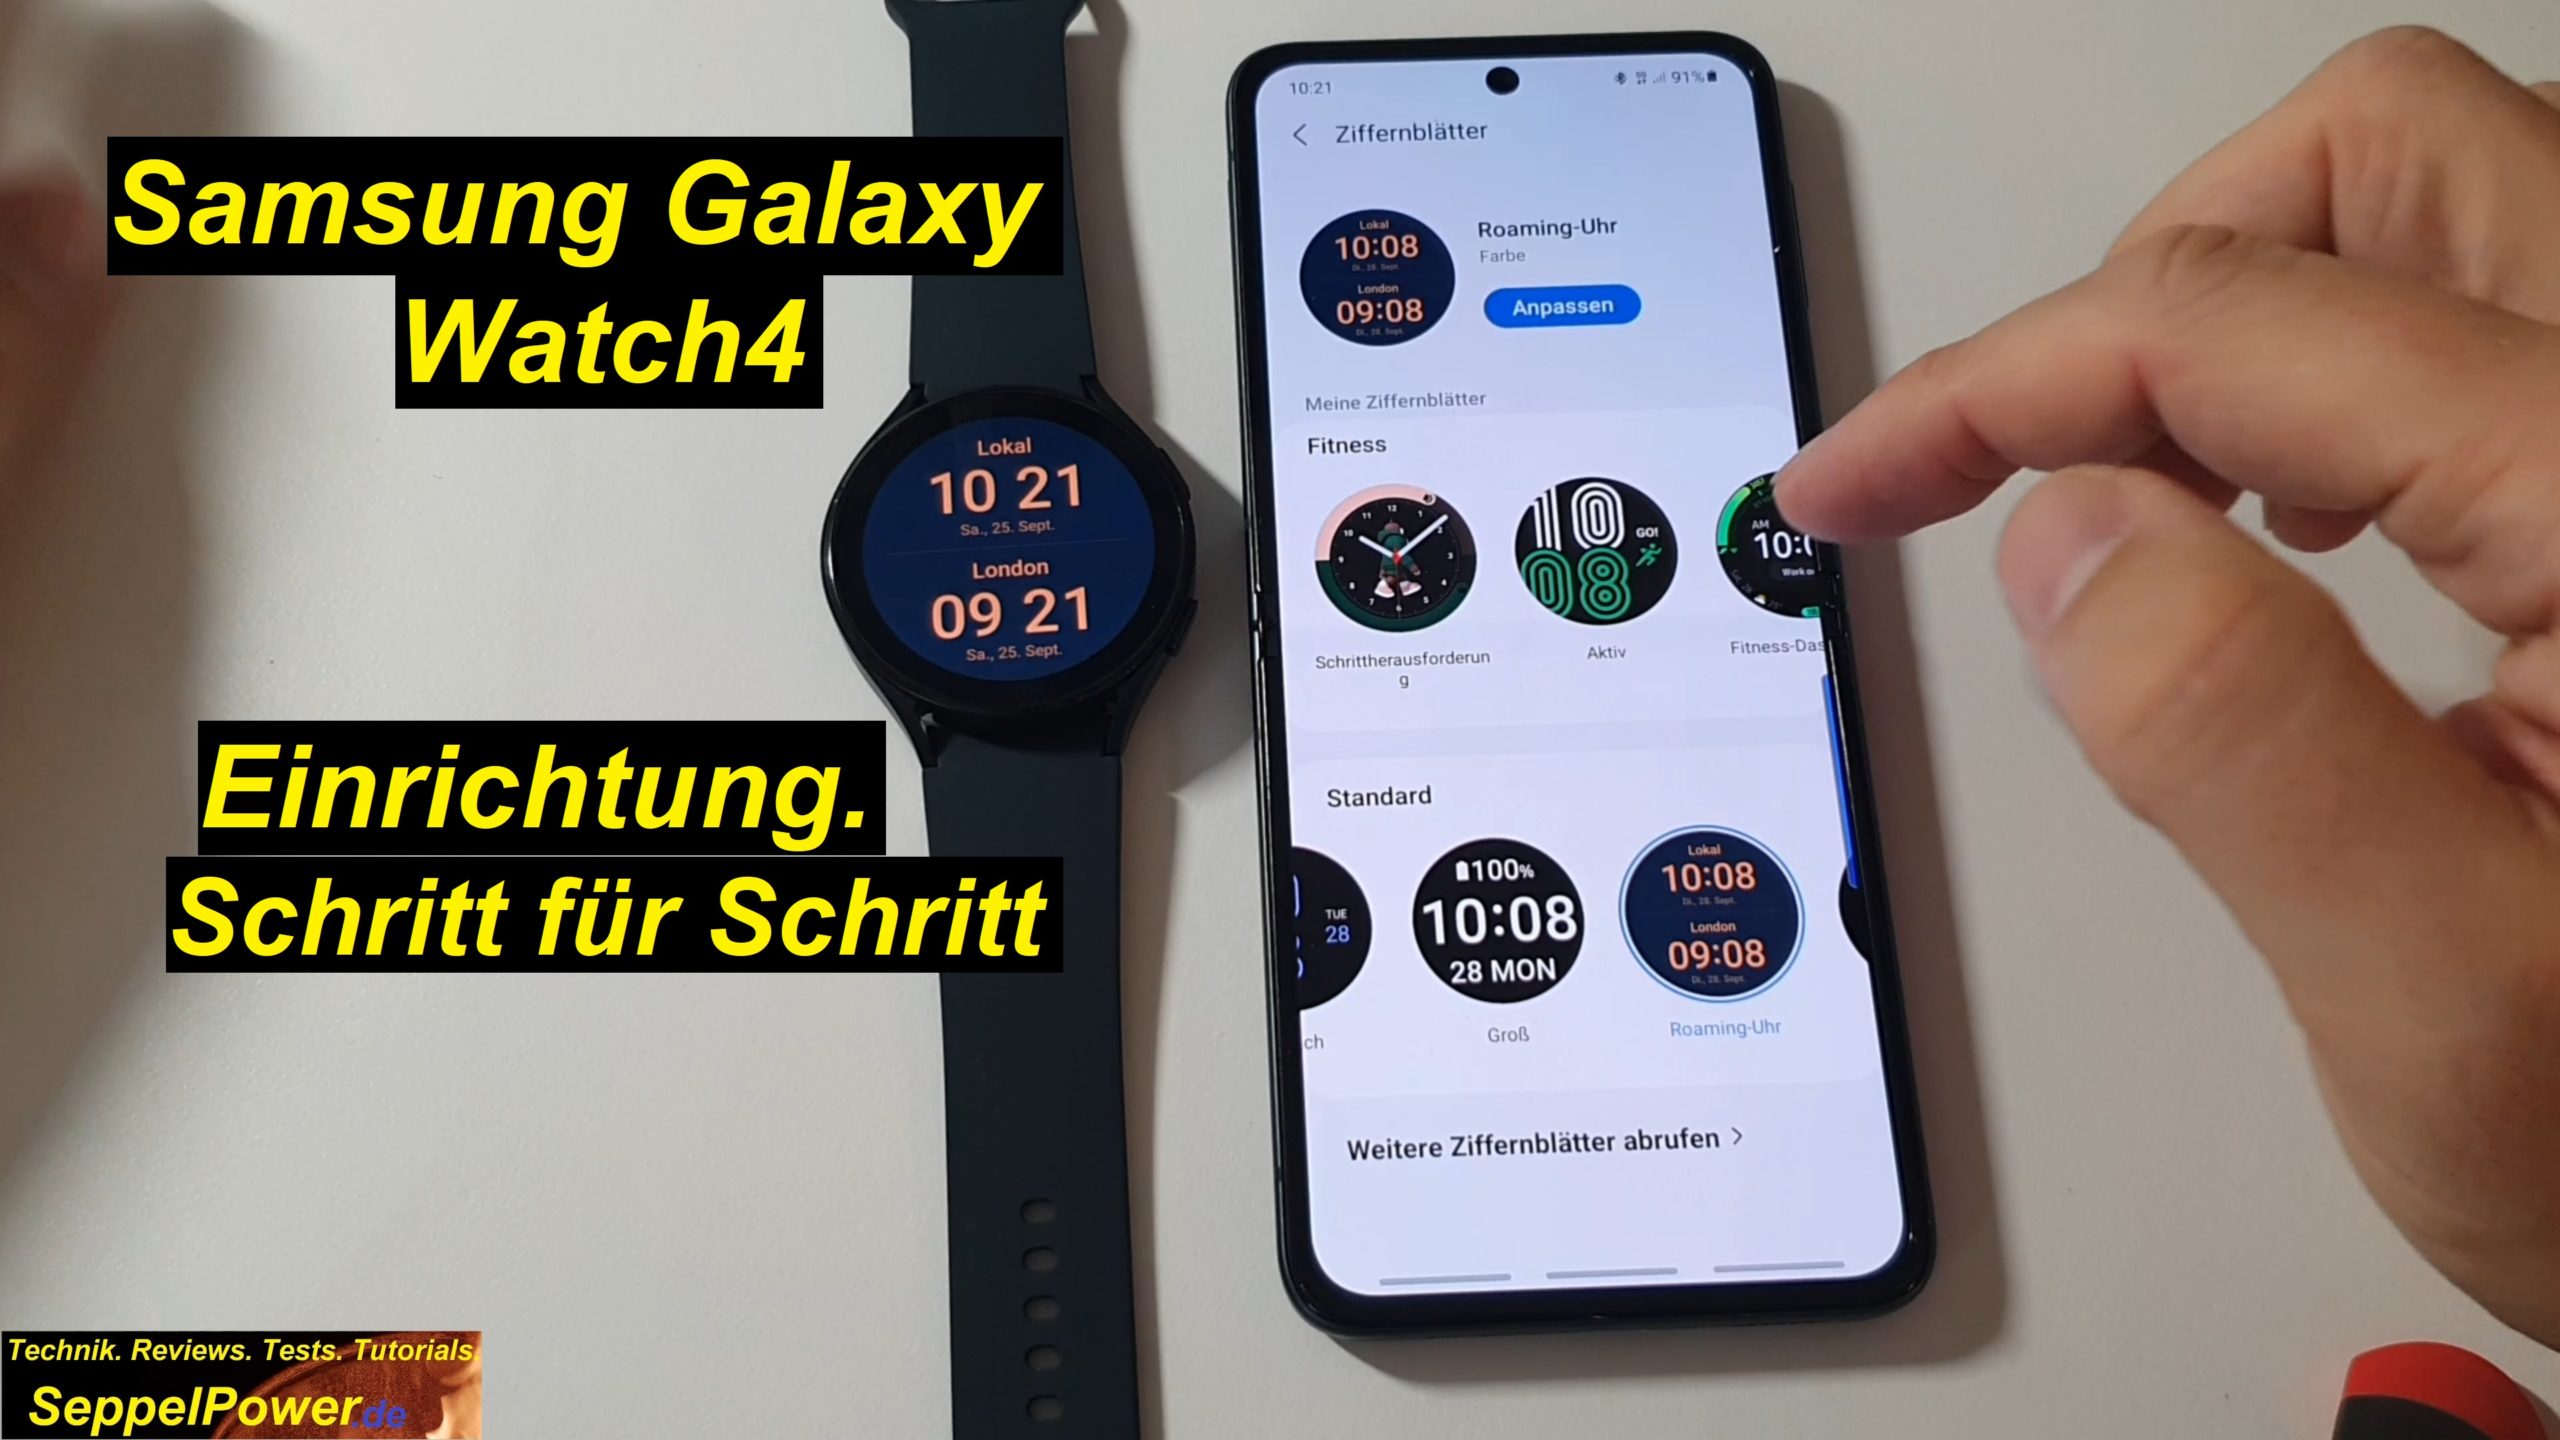 Tutorial Samsung Galaxy Watch4 einrichten. Ausführlich erklärt. Schritt für Schritt